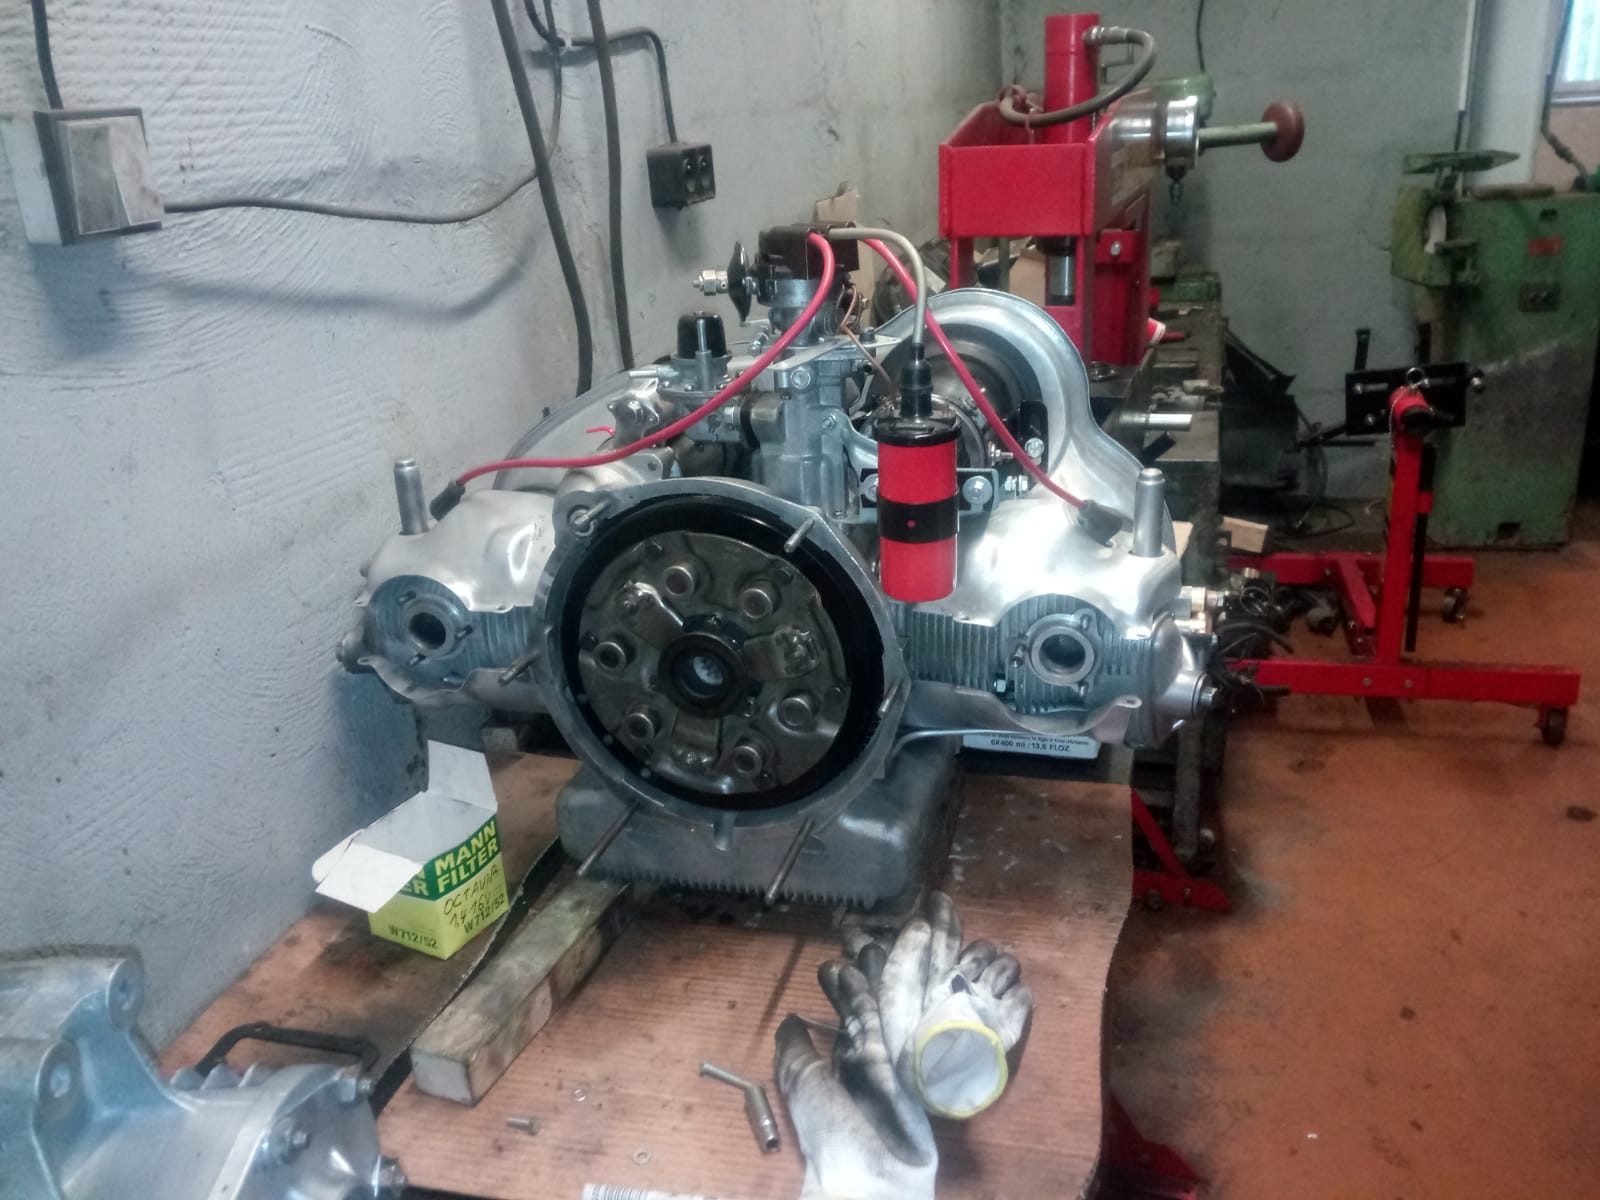 Restauration Restaurierung panhard 24 bt motor